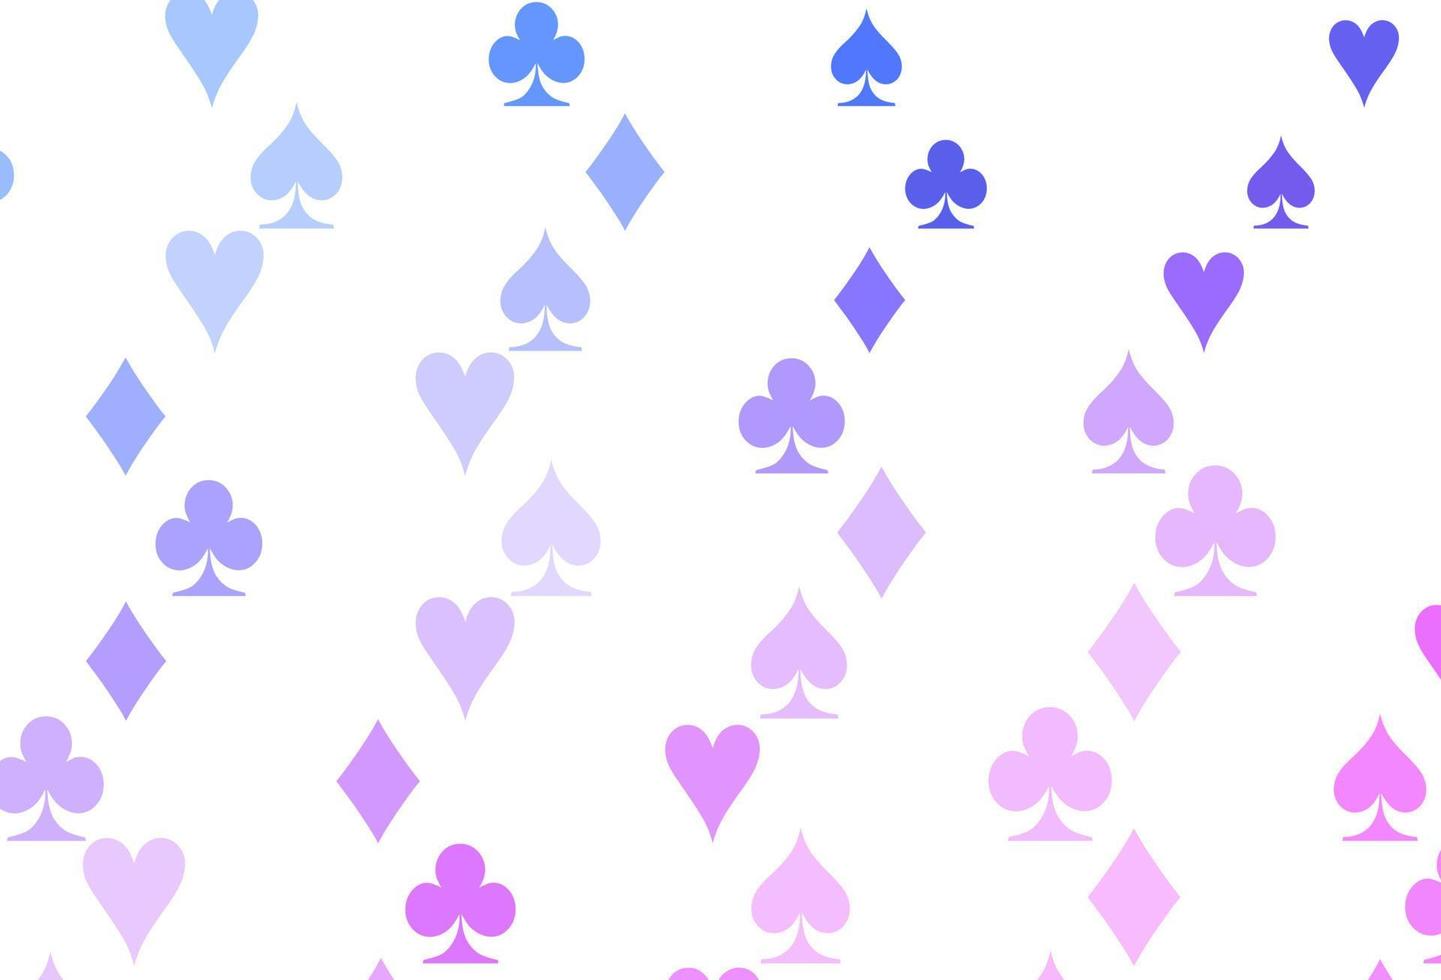 luz-de-rosa, azul padrão de vetor com símbolo de cartas.